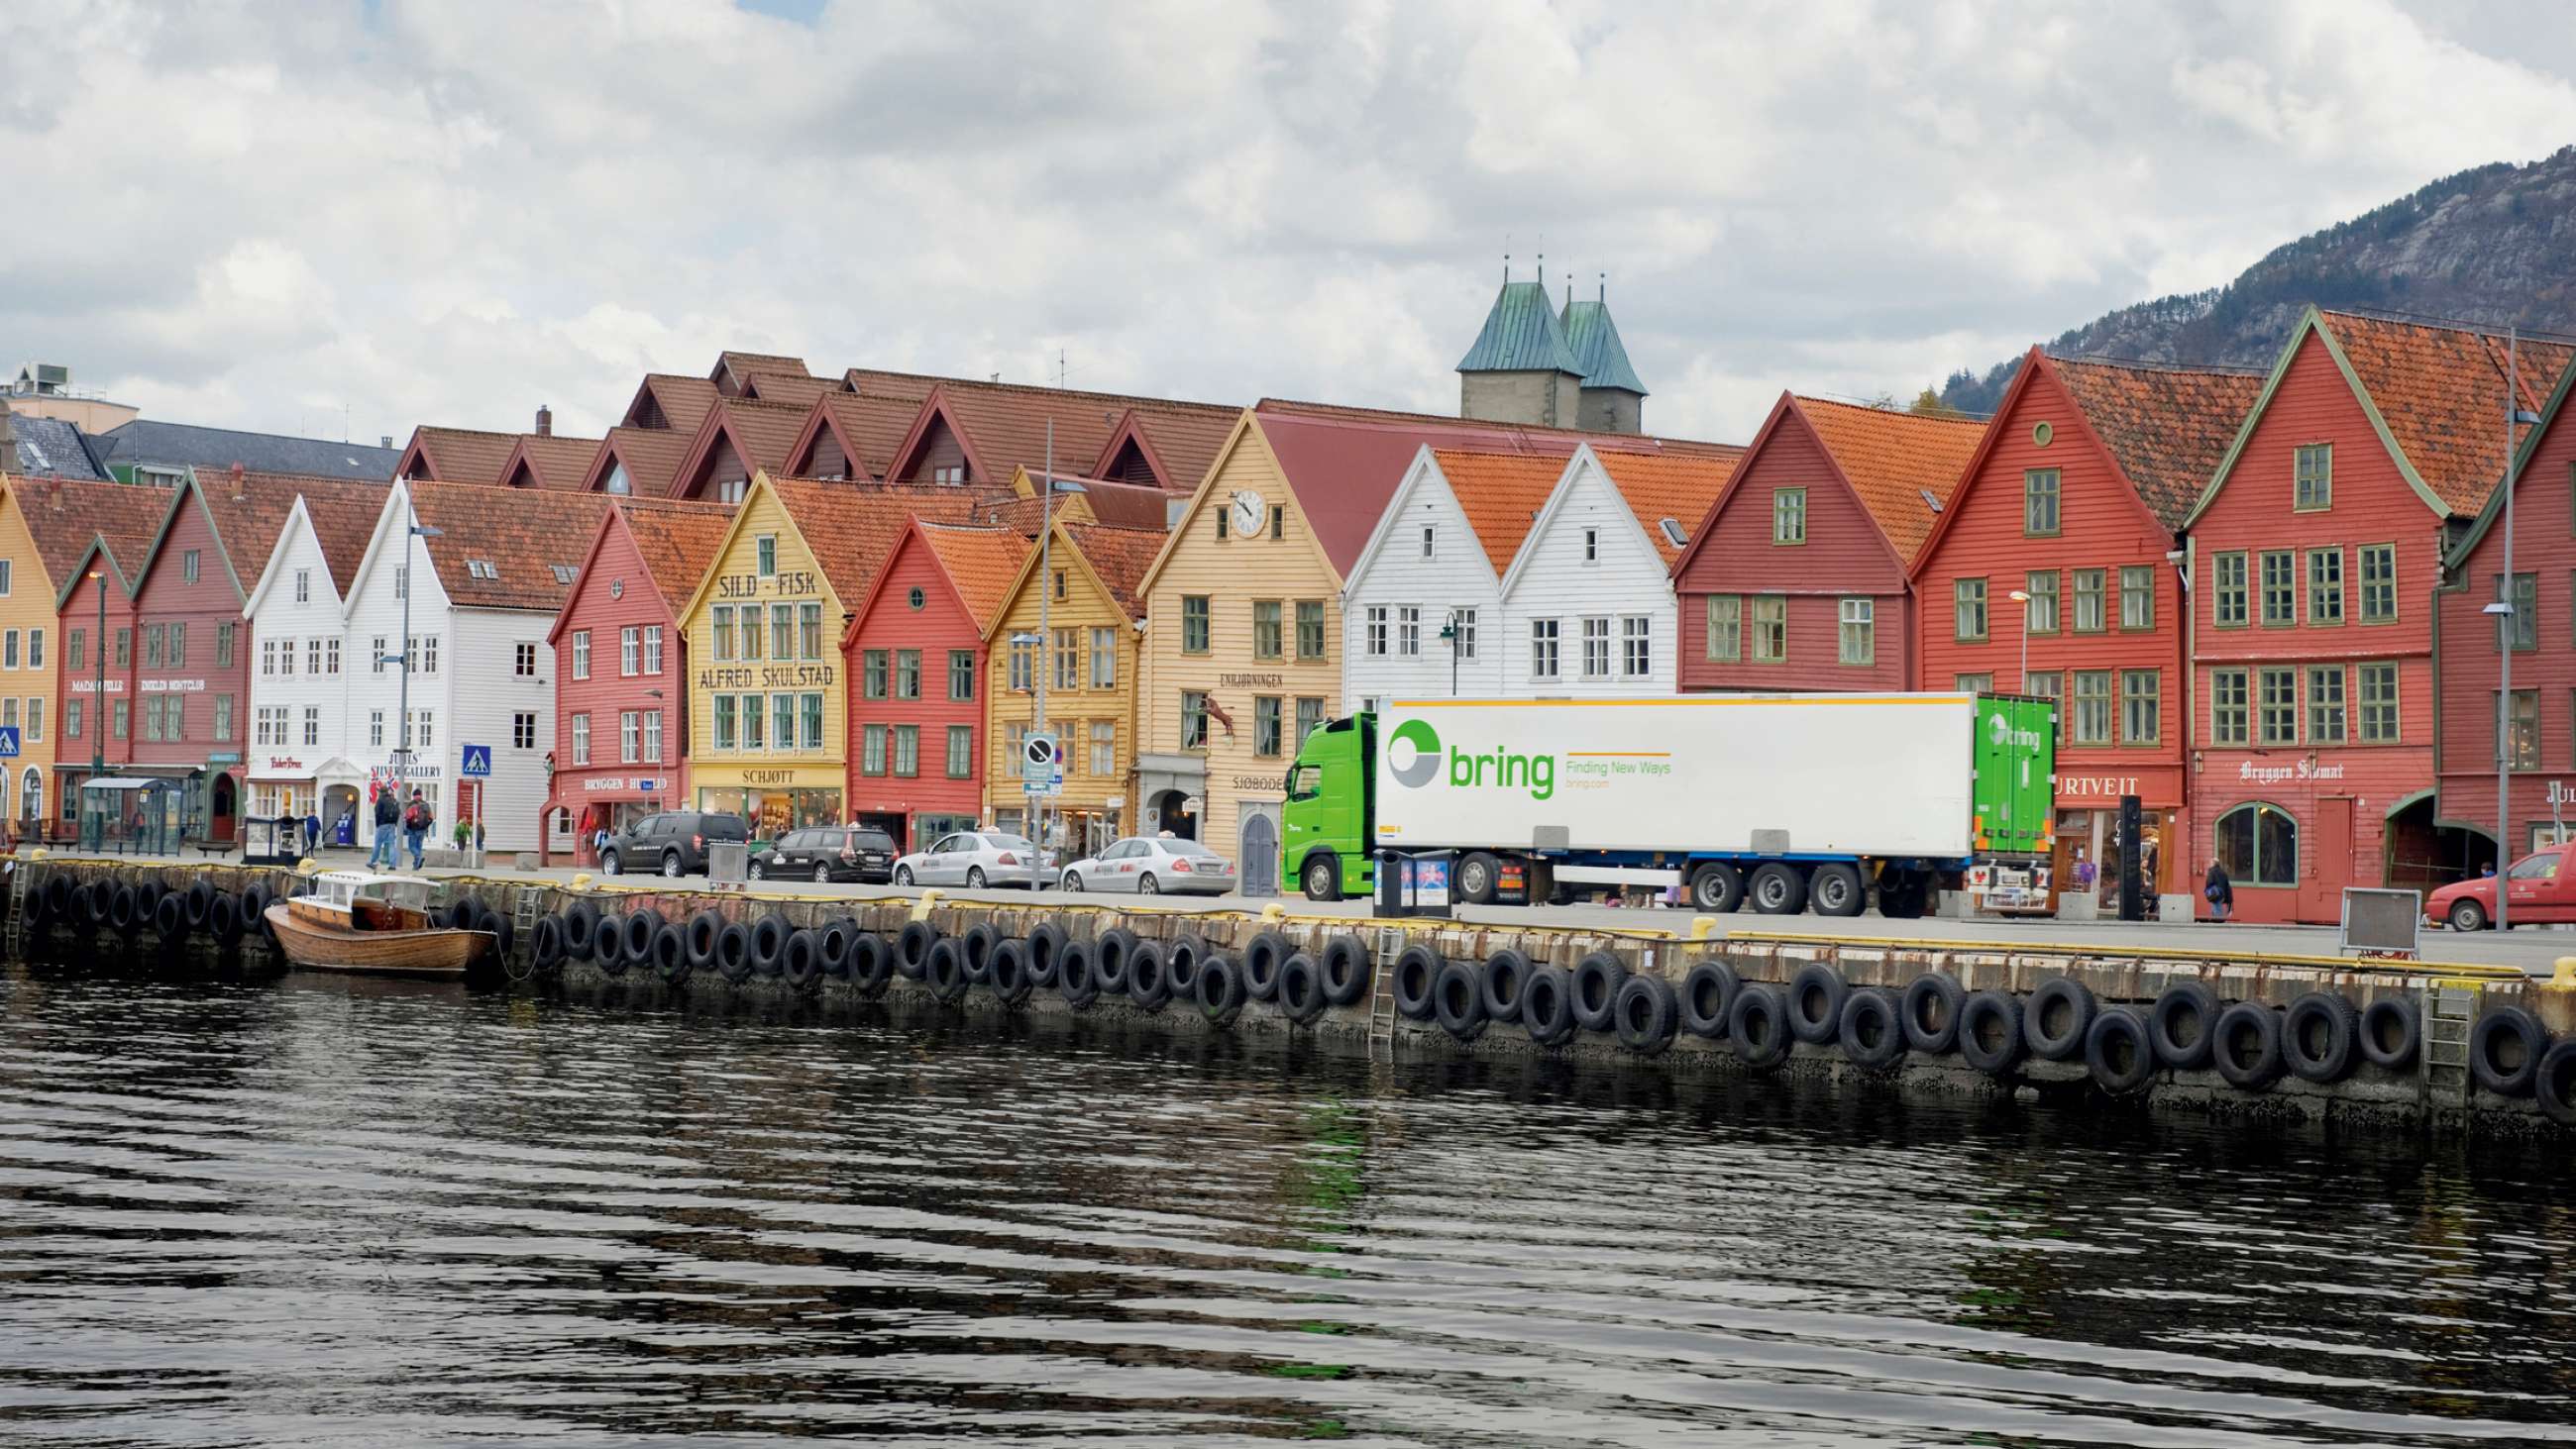 Bring-lastebil på Bryggen i Bergen